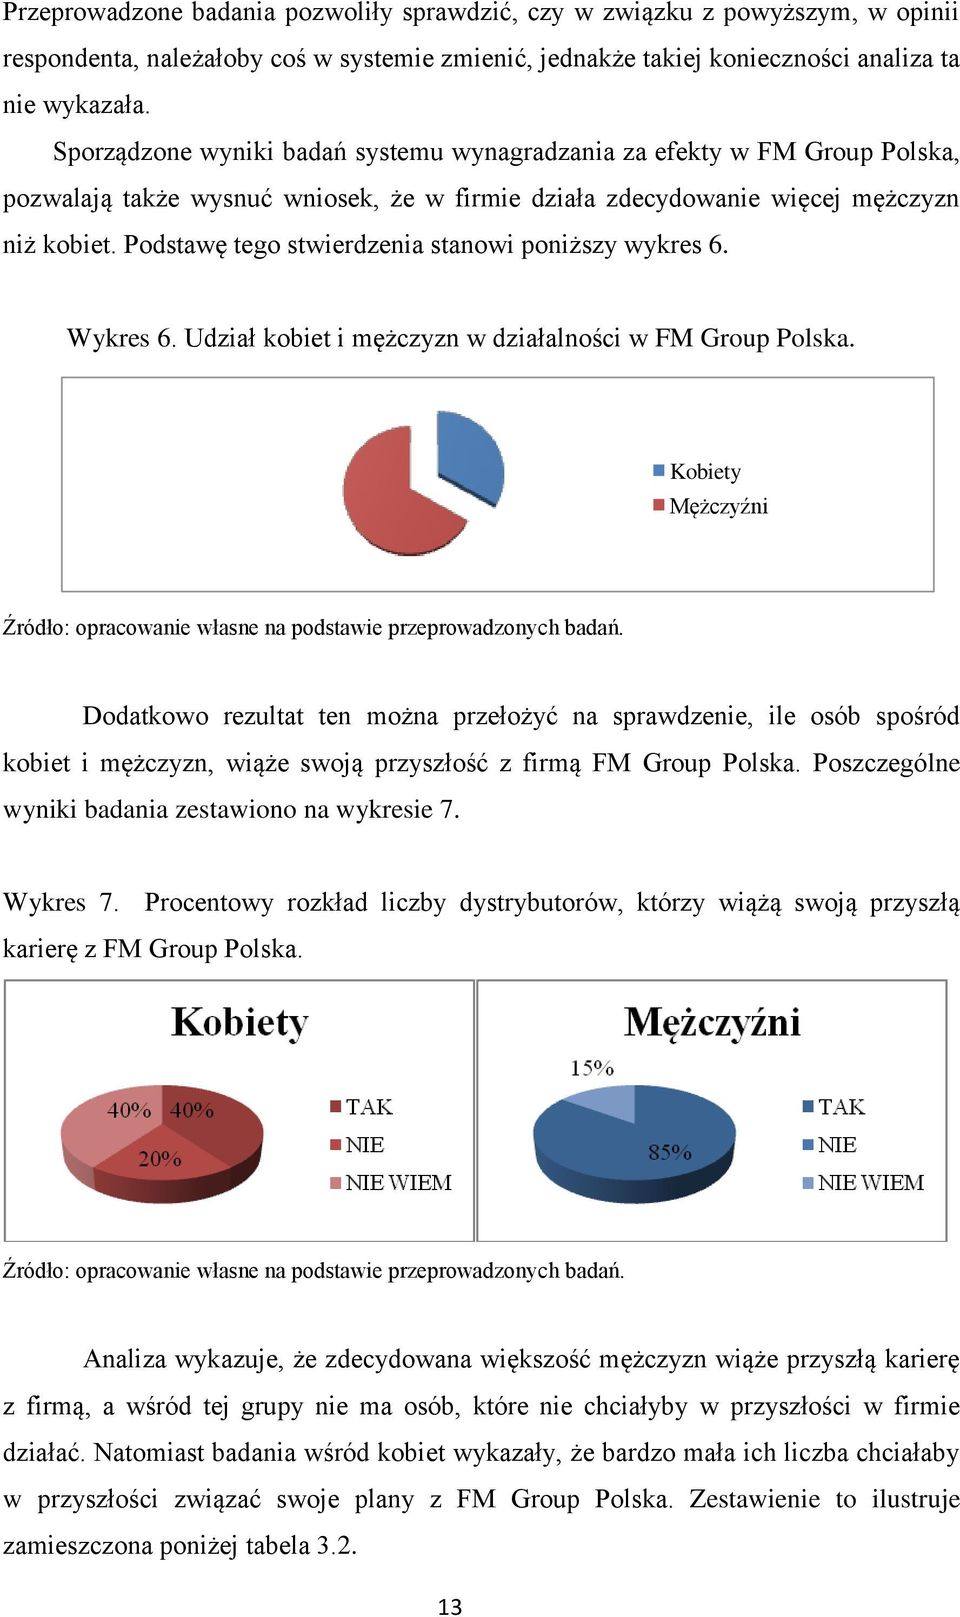 Podstawę tego stwierdzenia stanowi poniższy wykres 6. Wykres 6. Udział kobiet i mężczyzn w działalności w FM Group Polska.